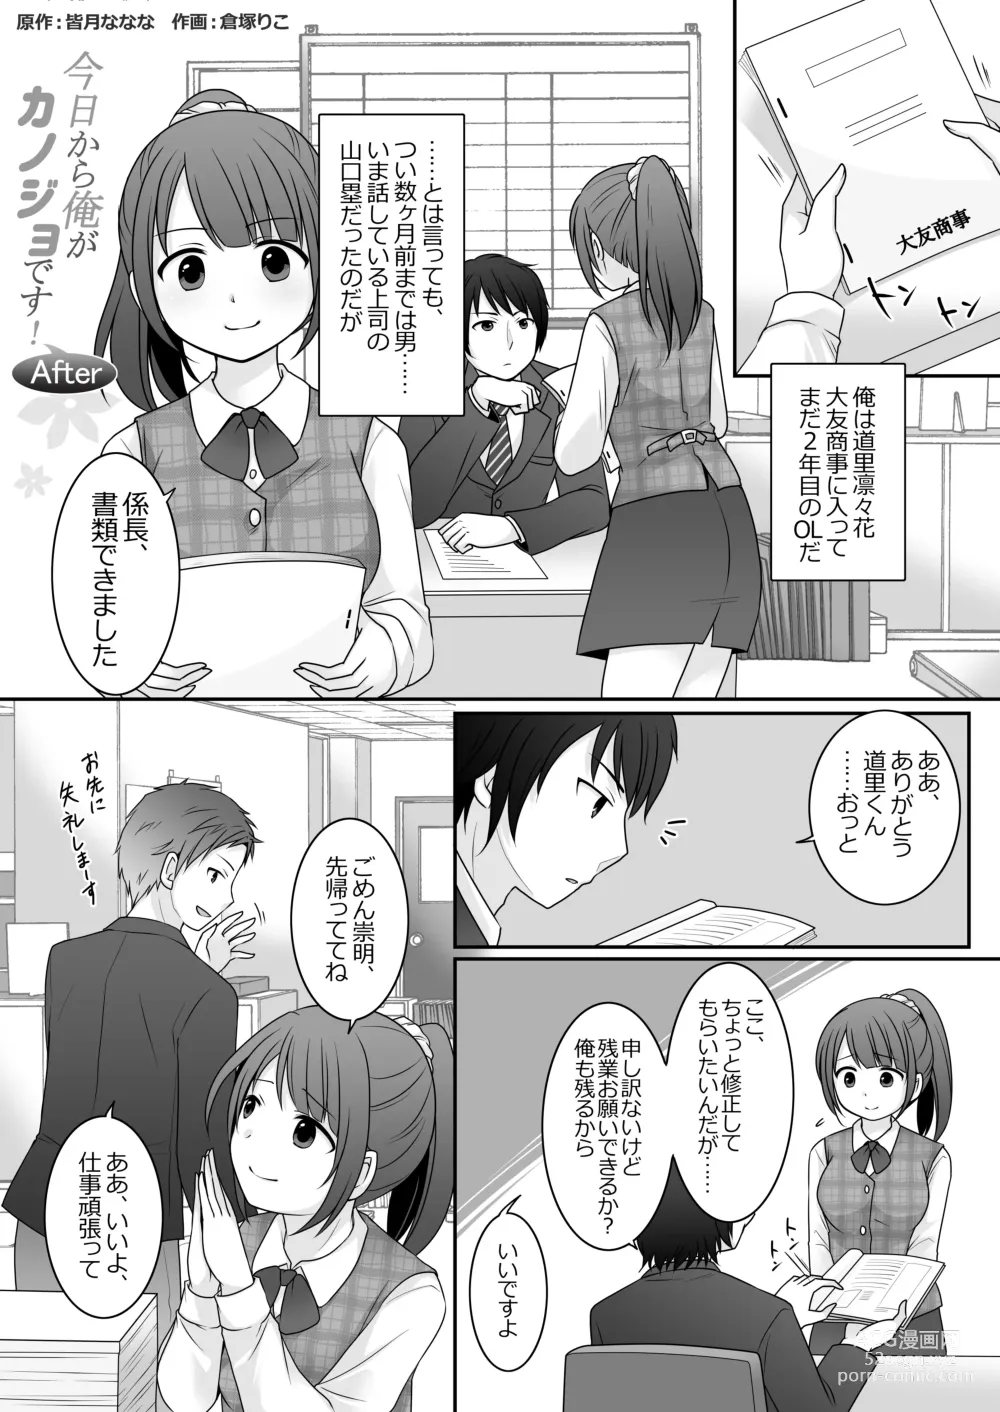 Page 2 of doujinshi Kyou Kara Ore ga Kanojo desu! After